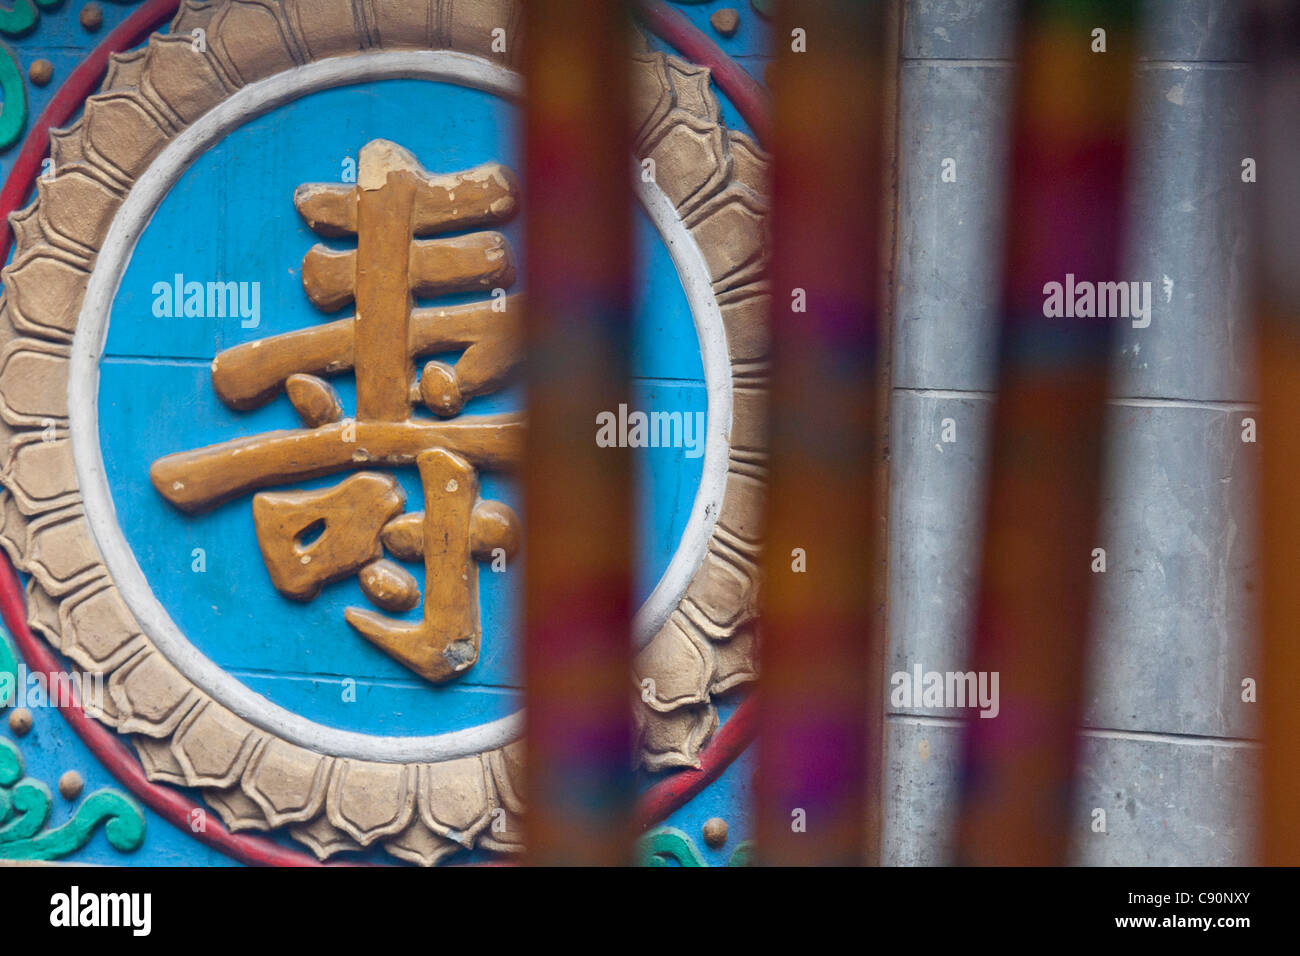 Bastoncini di incenso carattere cinese shou significato longevità Tempio Luohan tempio buddista centro di attrazione turistica di Chongqing pers Foto Stock